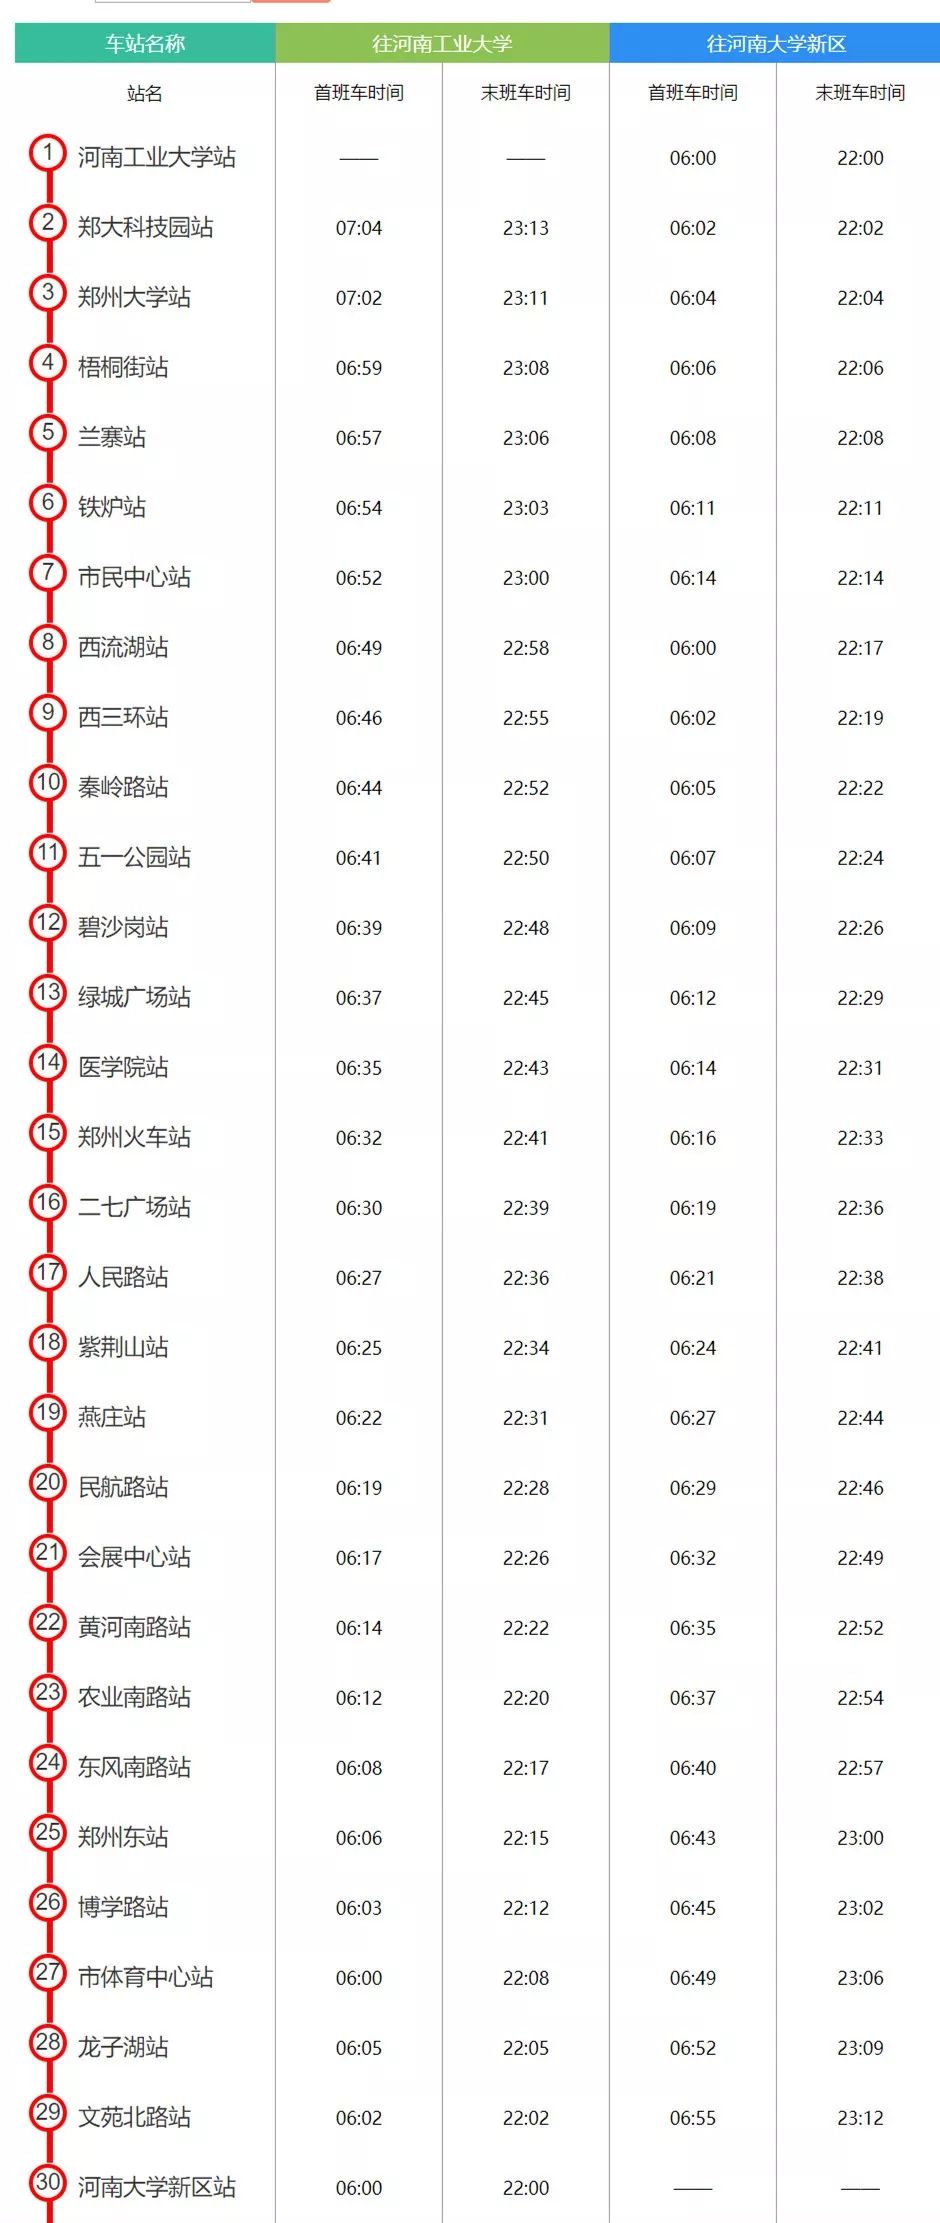 定了!2019年郑州将开通4条地铁线!